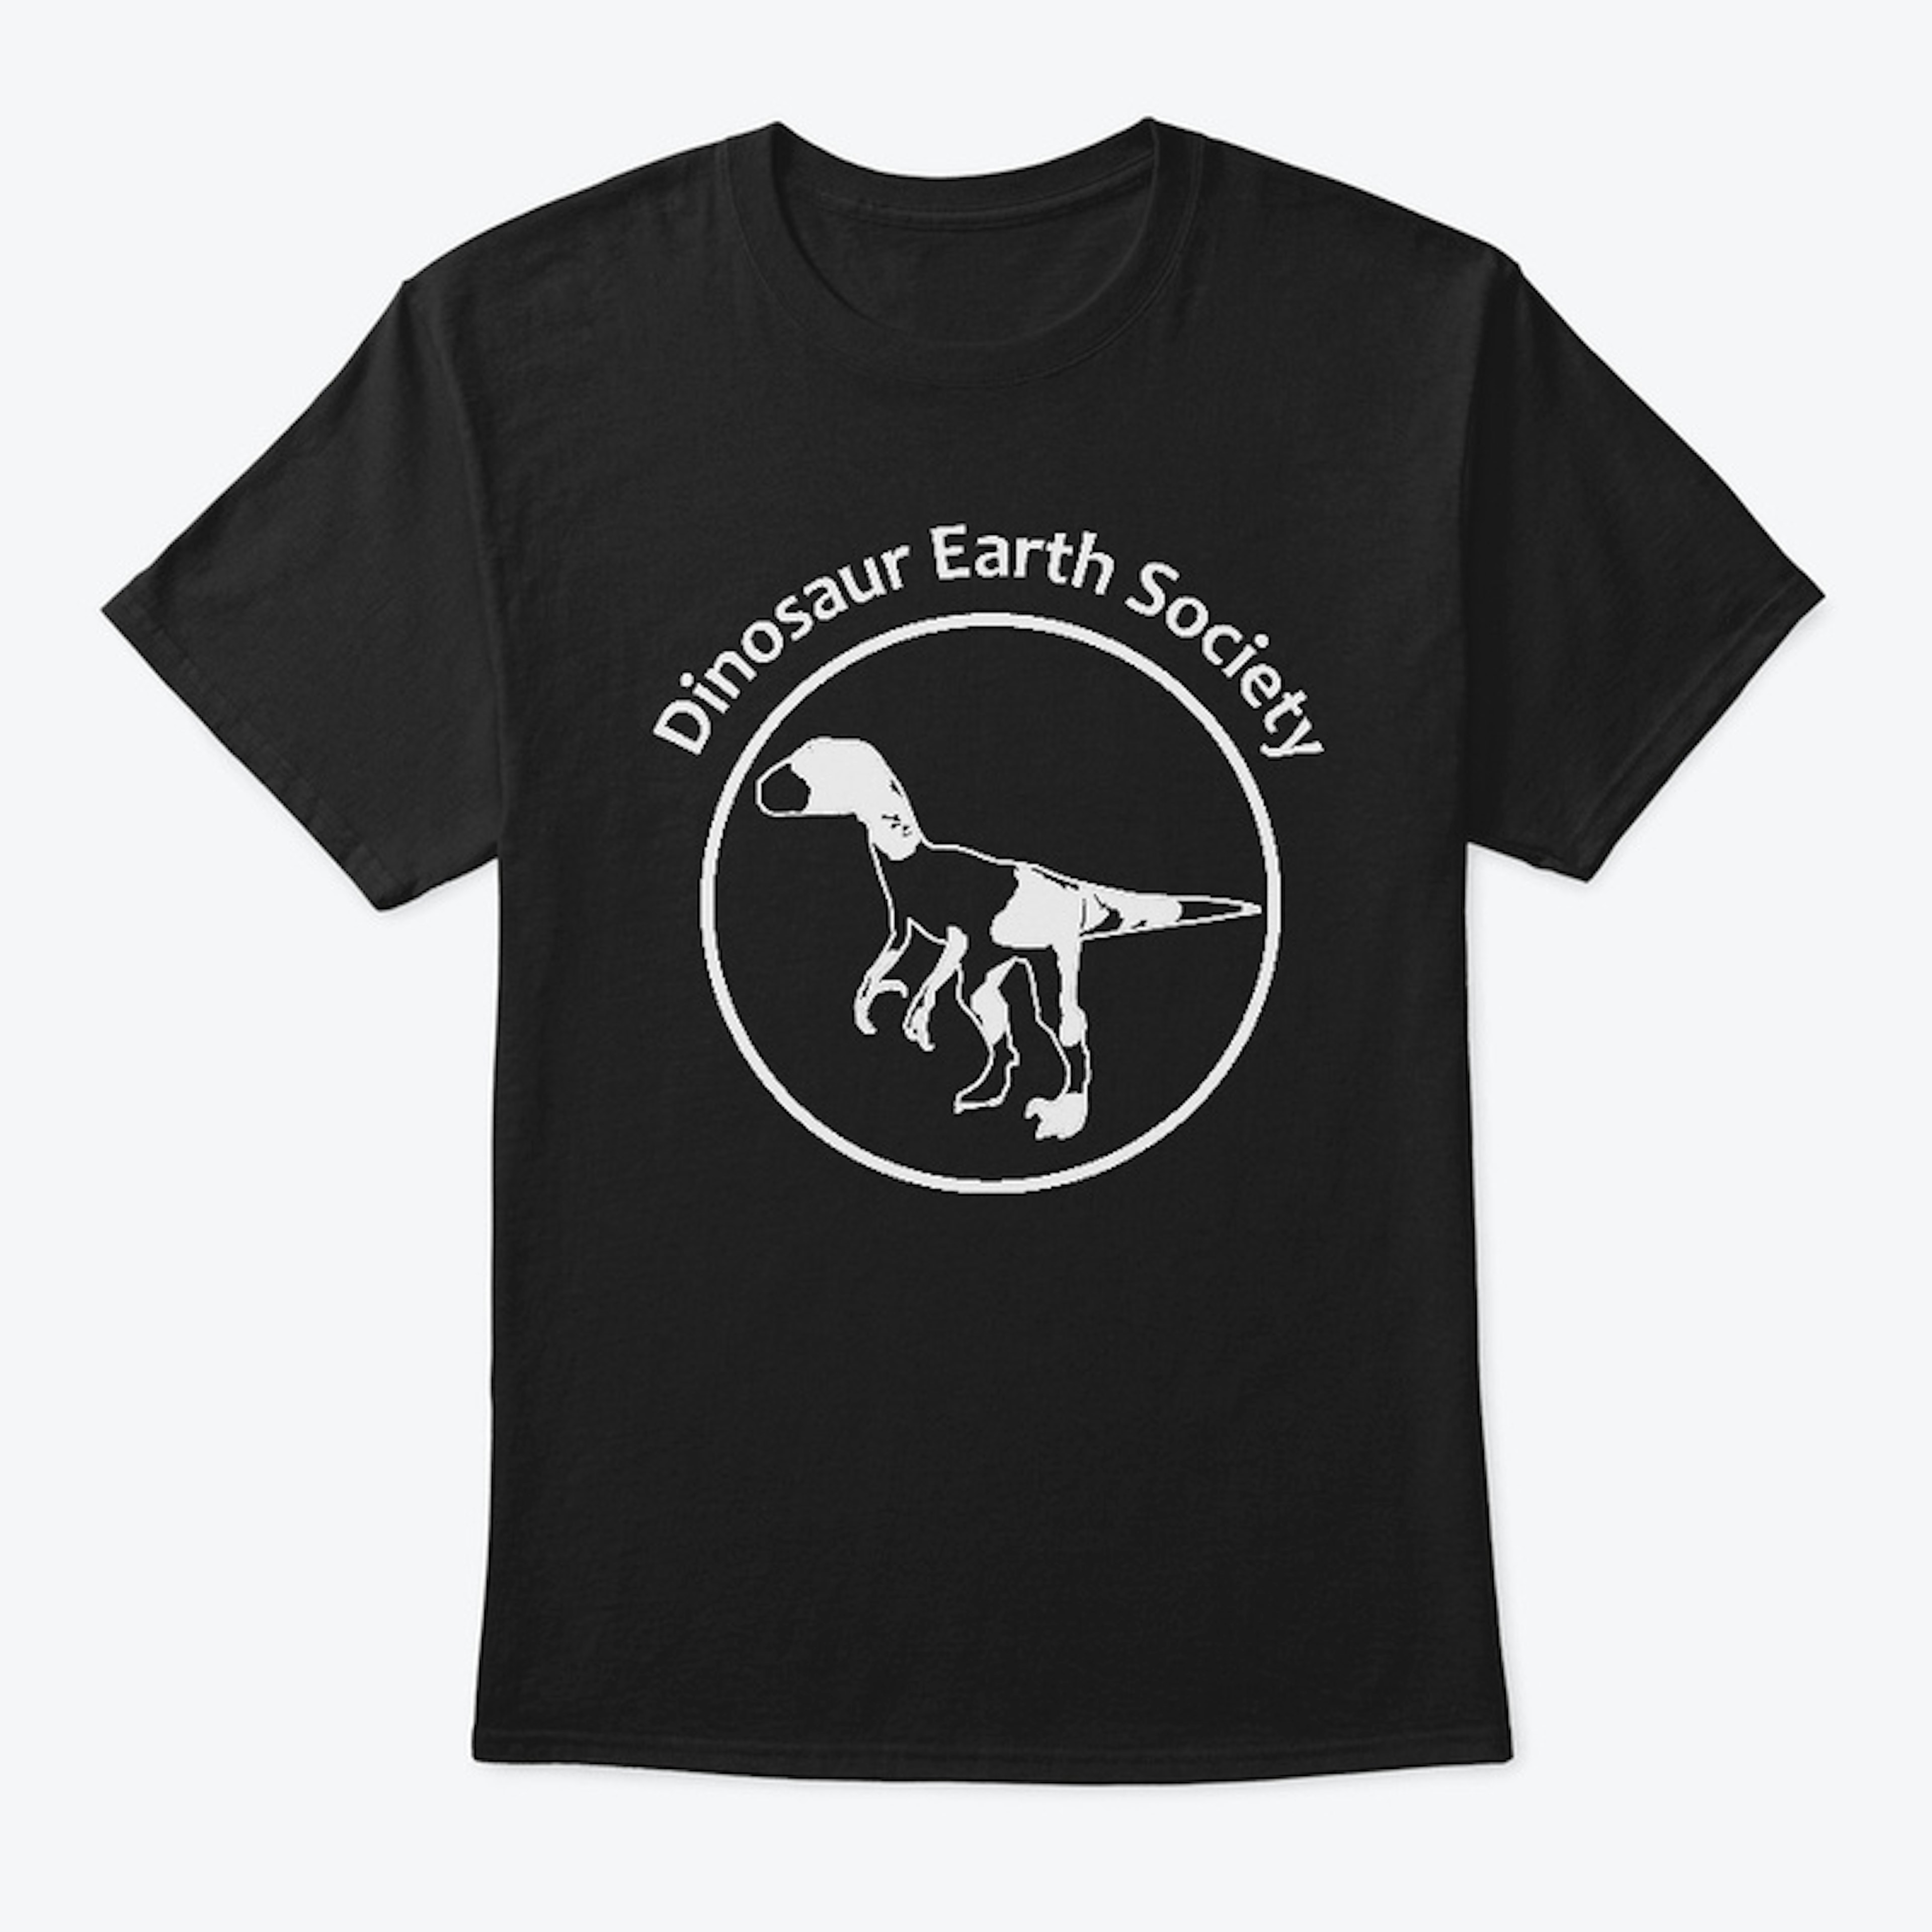 Dinosaur Earth Society (dark)